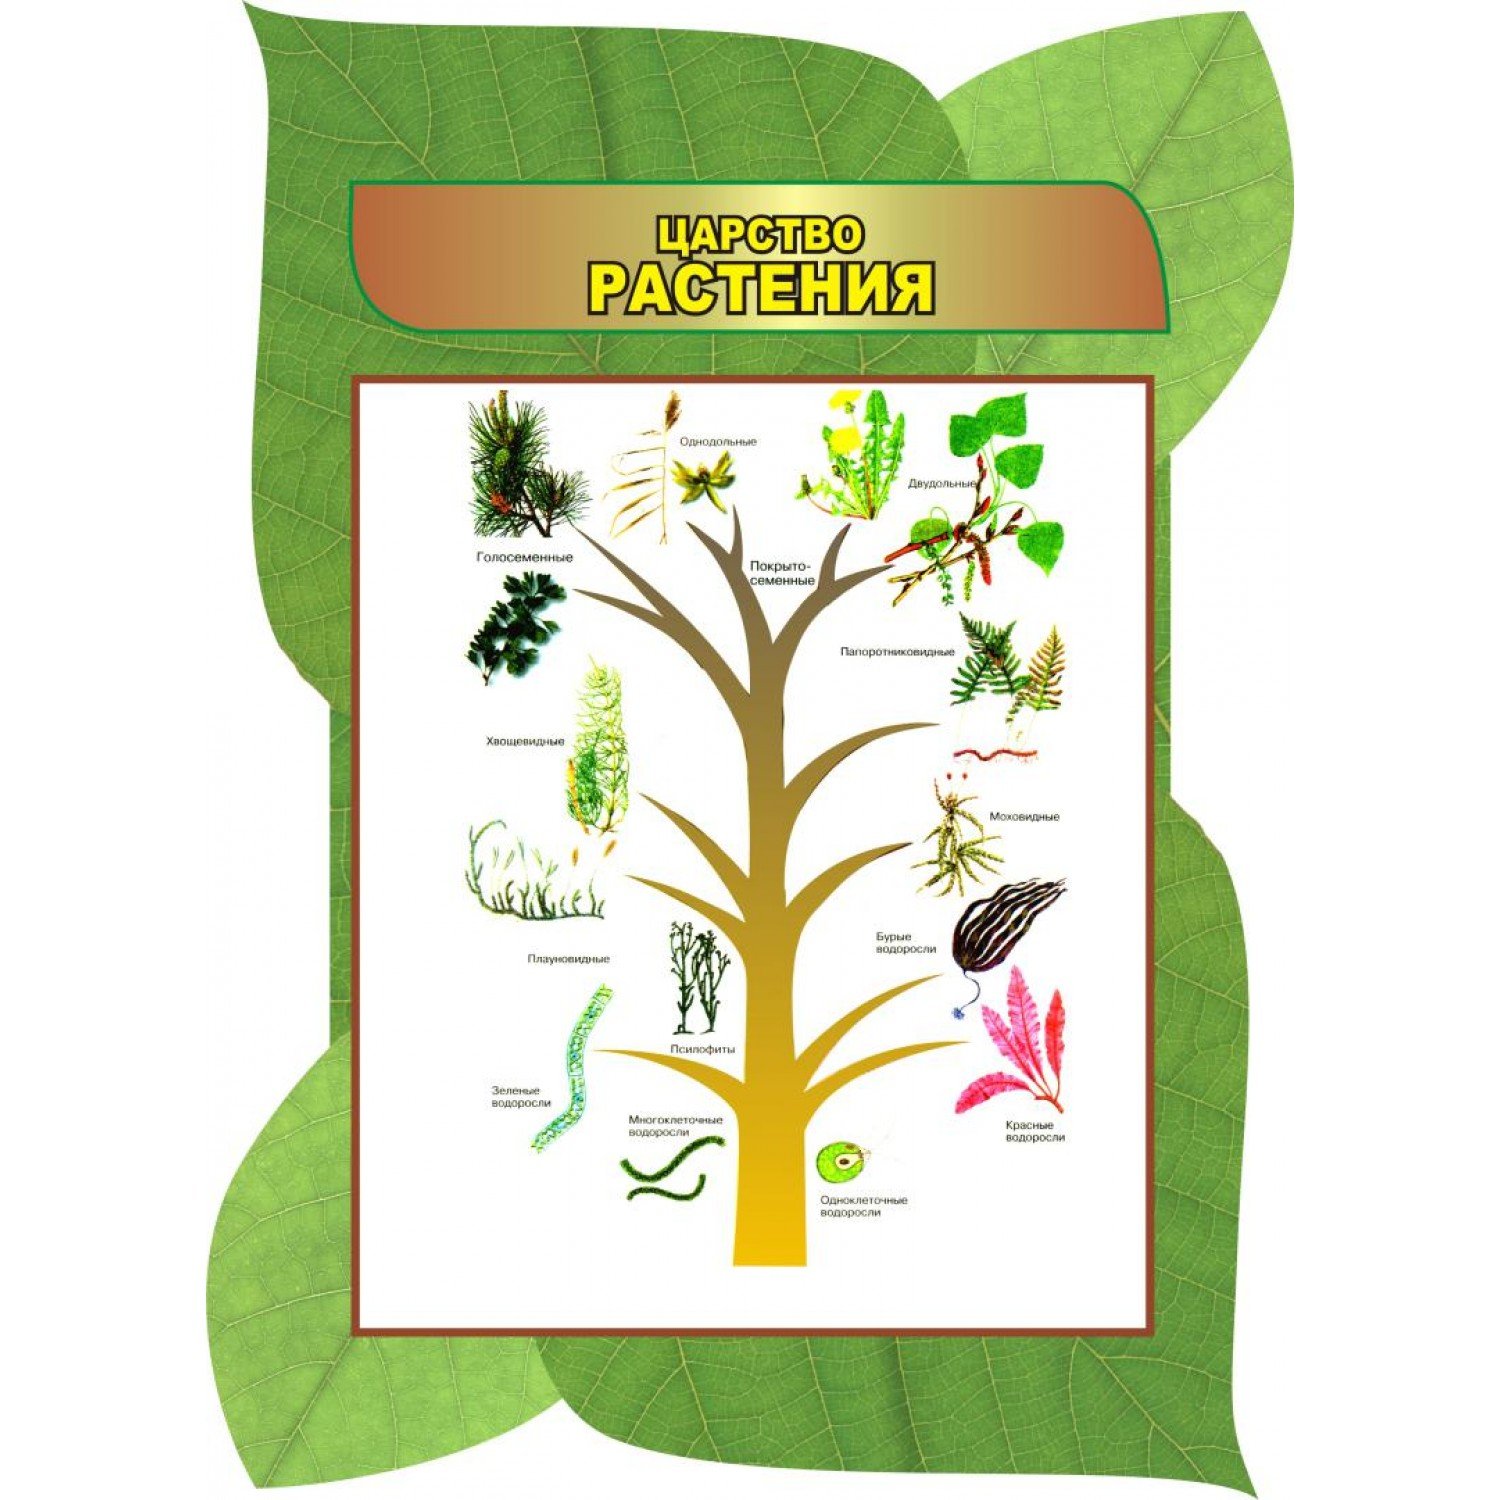 Биология царство растений для детей